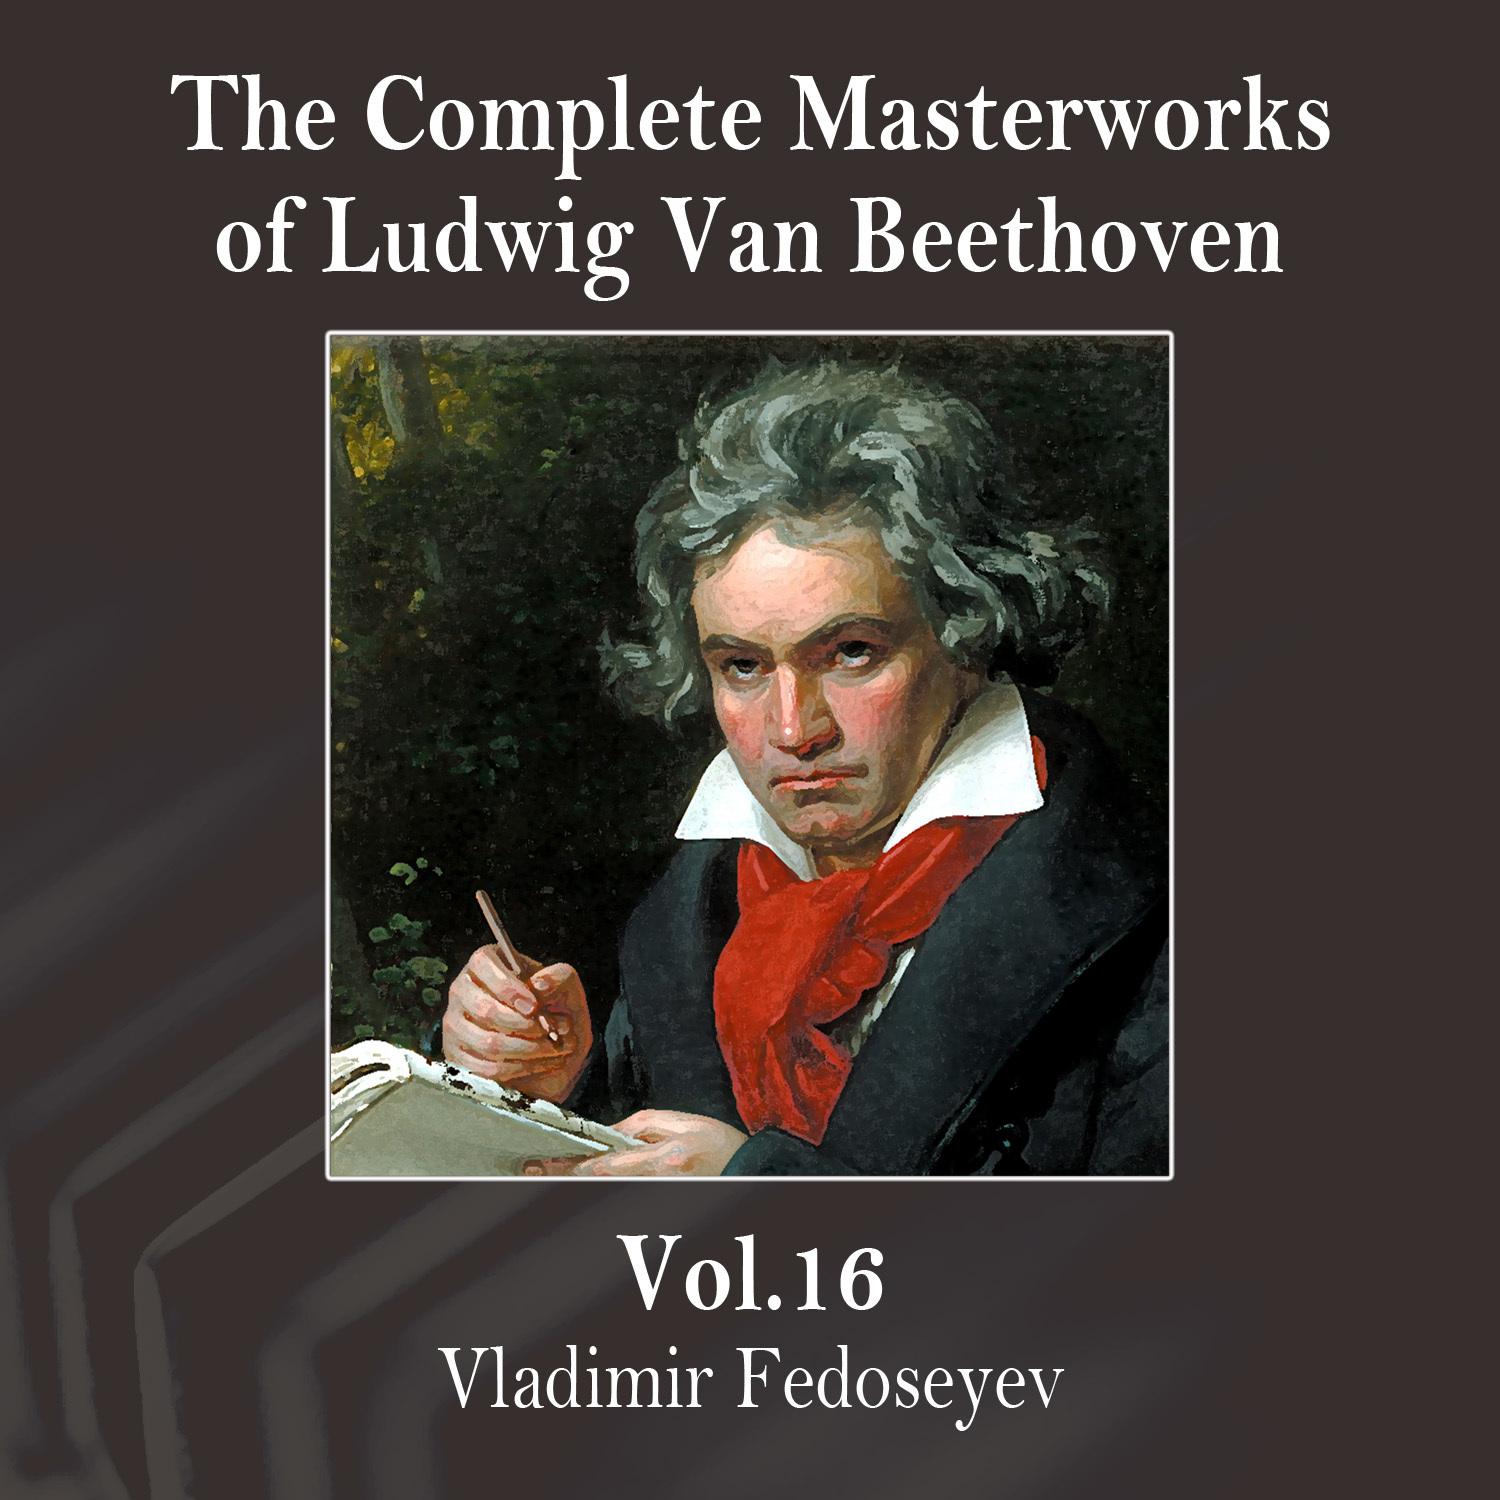 The Complete Masterworks of Ludwig Van Beethoven, Vol. 16